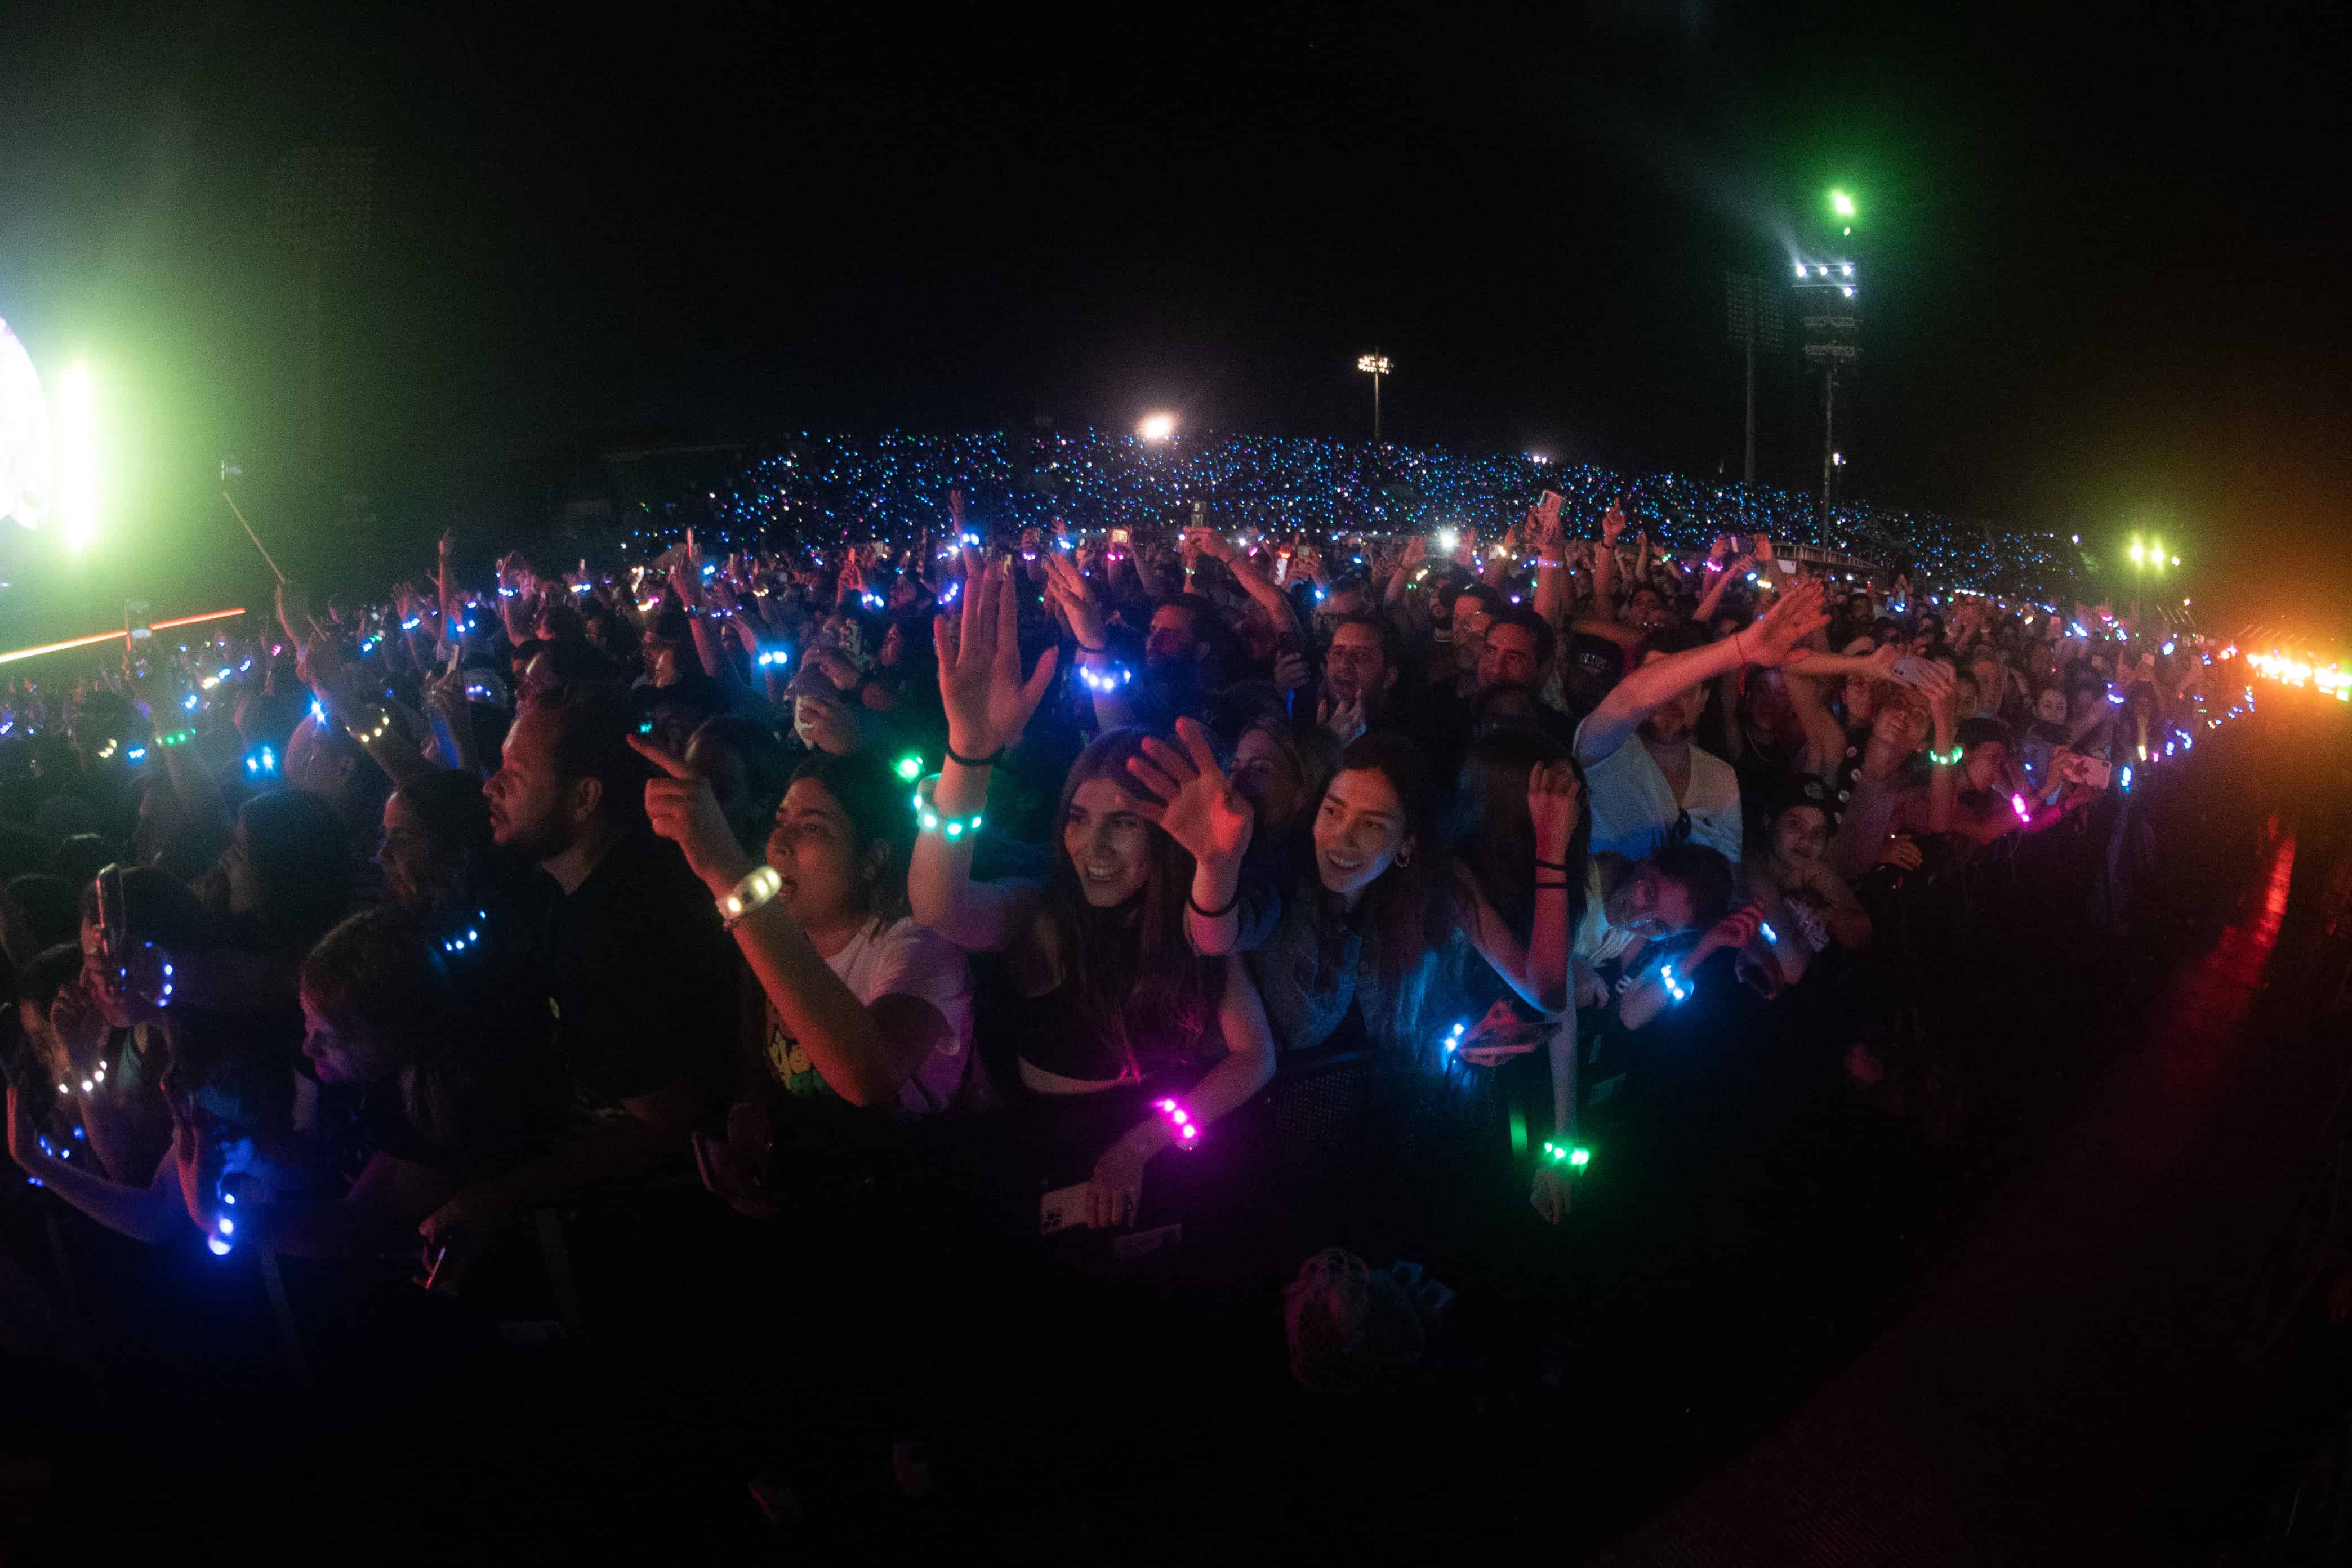 Miles de brazaletes con luces led se entregaron al público que se dio cita en el Estadio Olímpico Félix Sánchez.